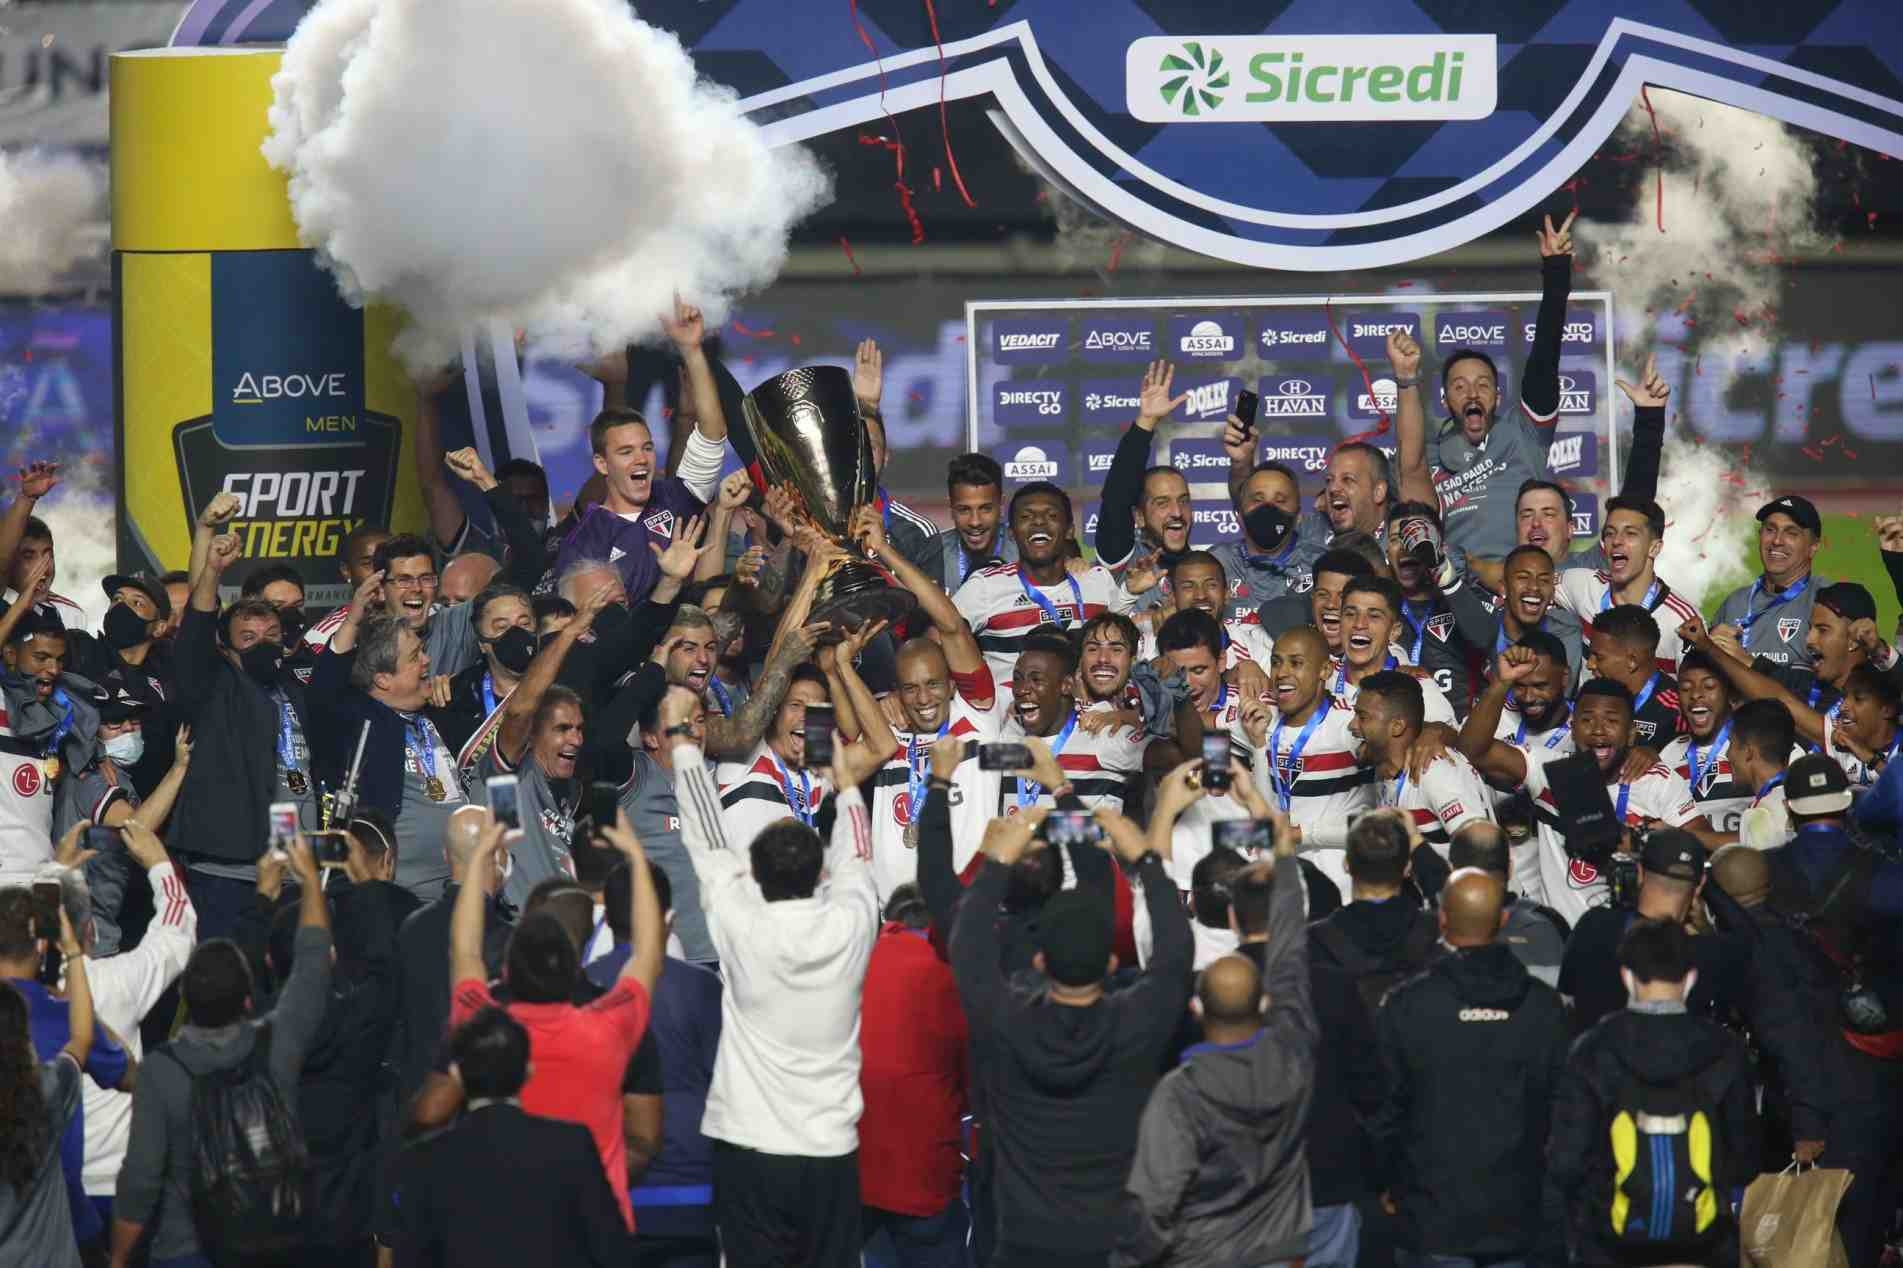 Record ganha concorrência e transmitirá Campeonato Paulista em 2022